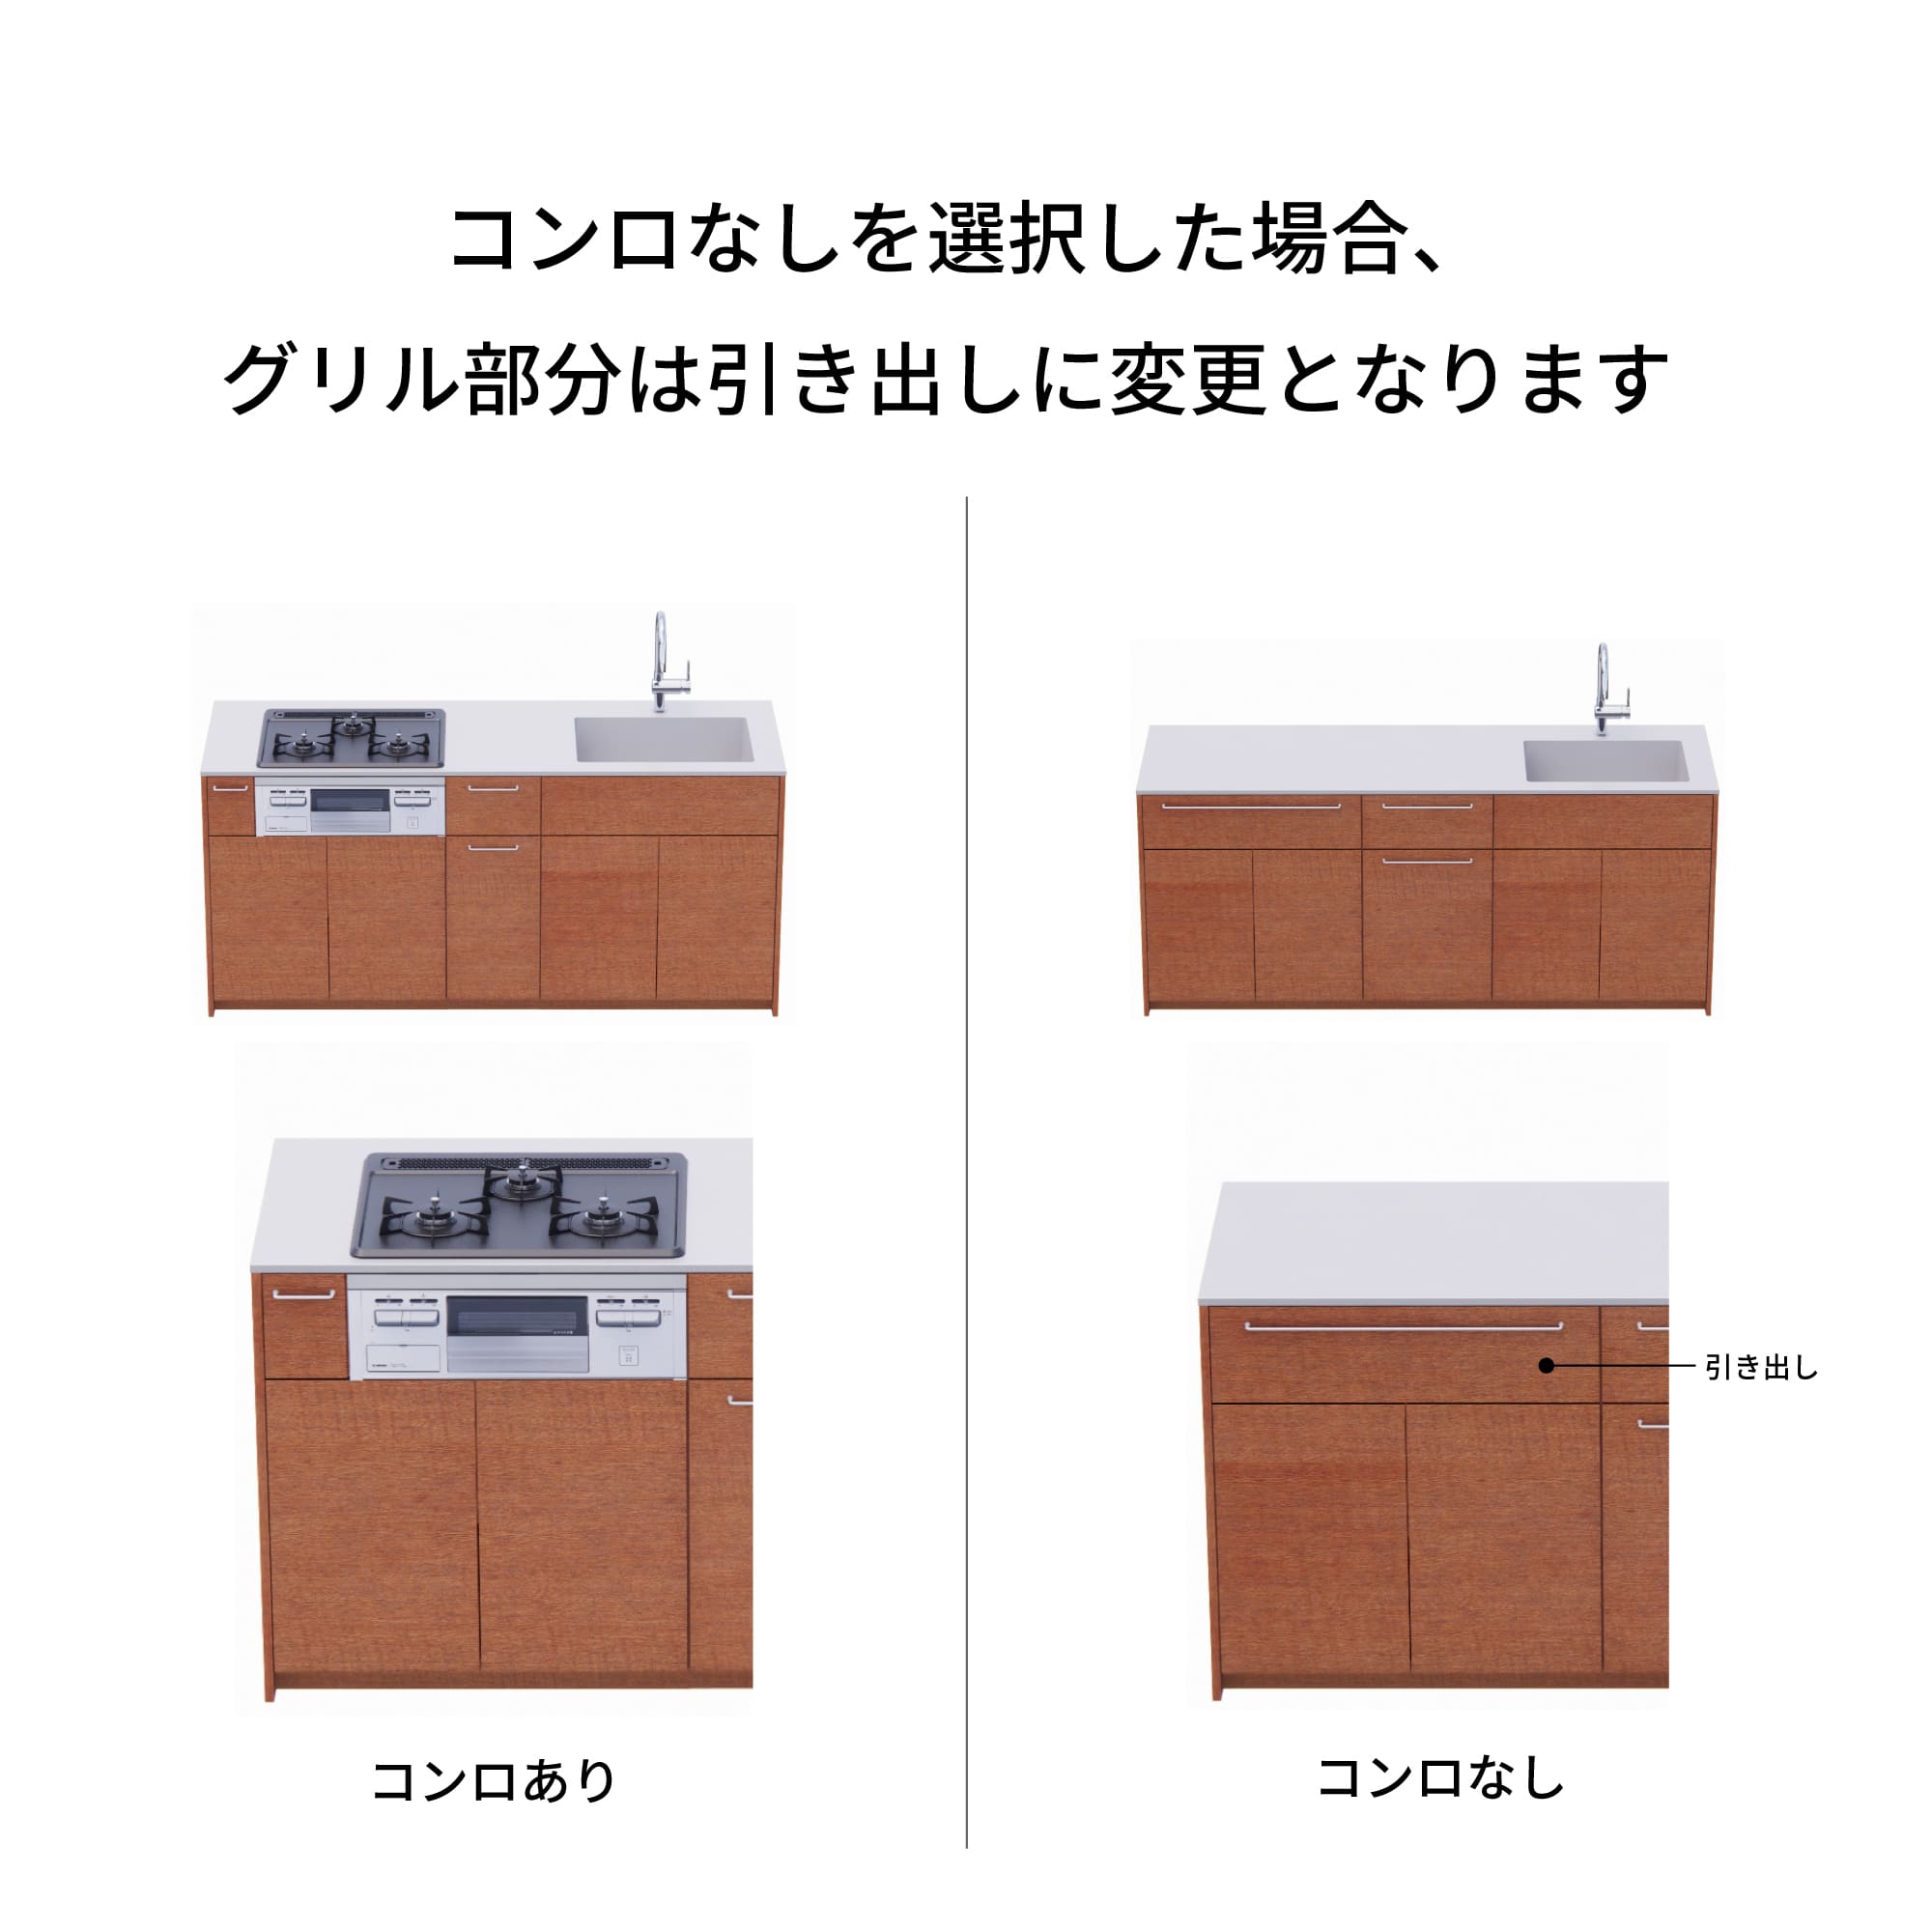 木製システムキッチン 壁付け型 W2440～2740・コンロなし / オーブンなし / 食洗機あり KB-KC022-27-G183 コンロ無しの場合、通常魚焼きグリルがある部分は引き出しになっています